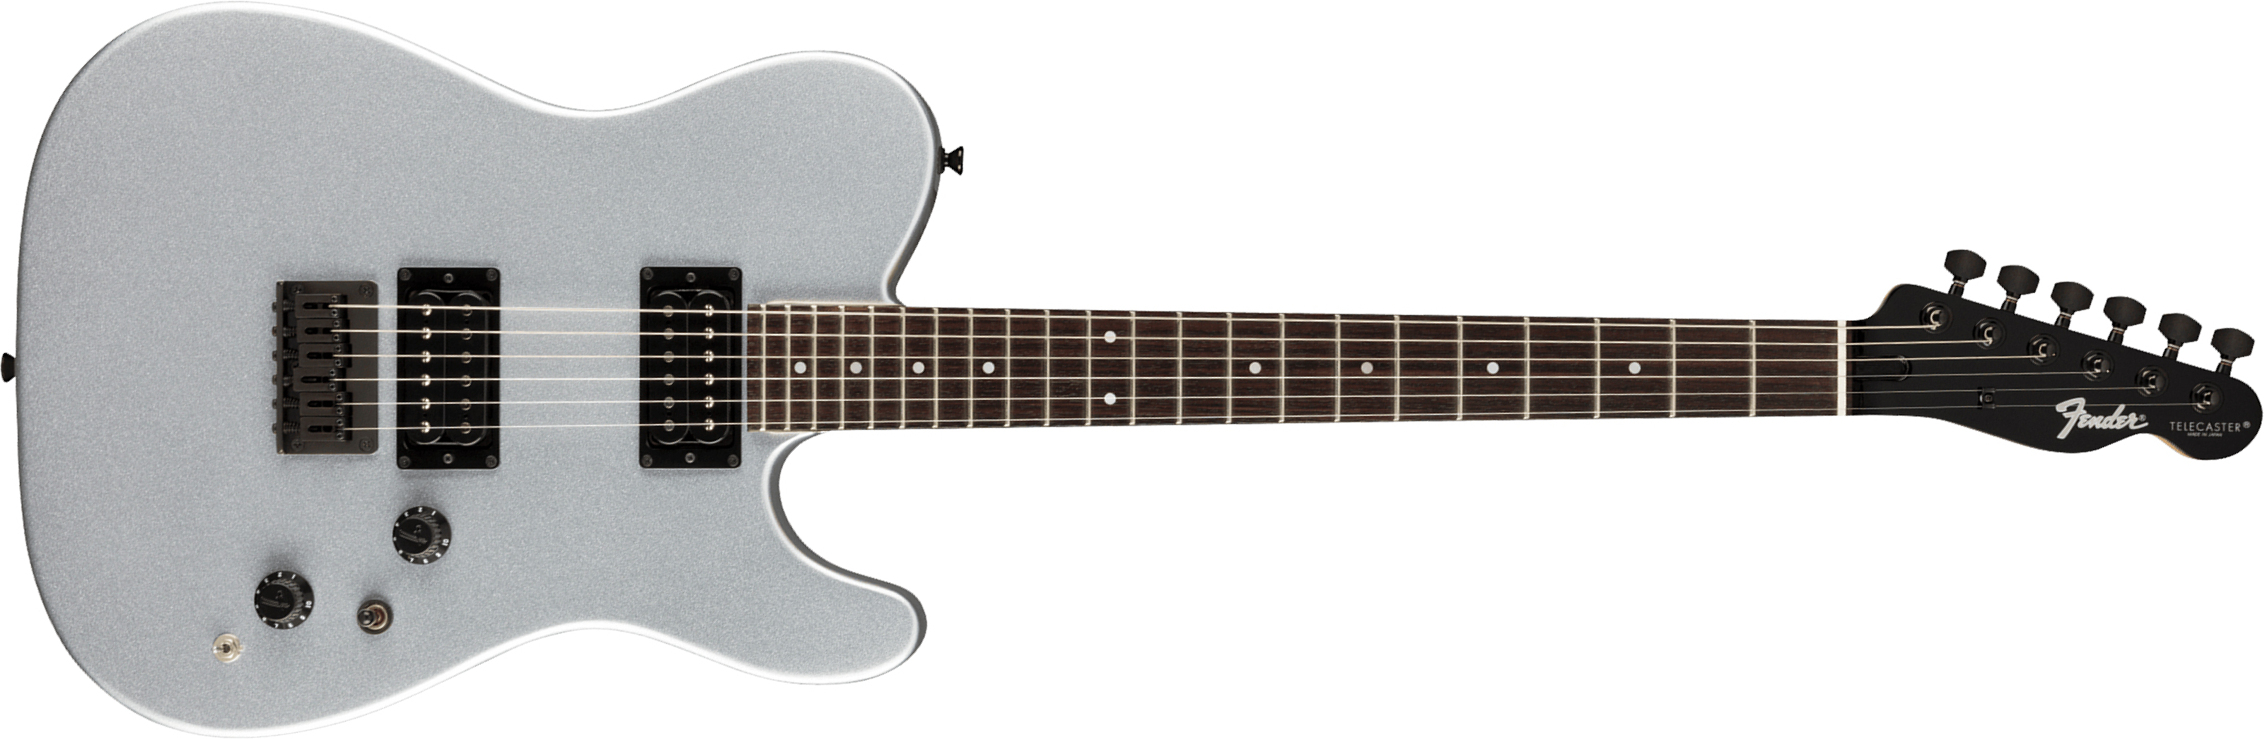 Fender Tele Boxer Hh Jap 2h Ht Rw +housse - Inca Silver - Guitarra eléctrica con forma de tel - Main picture